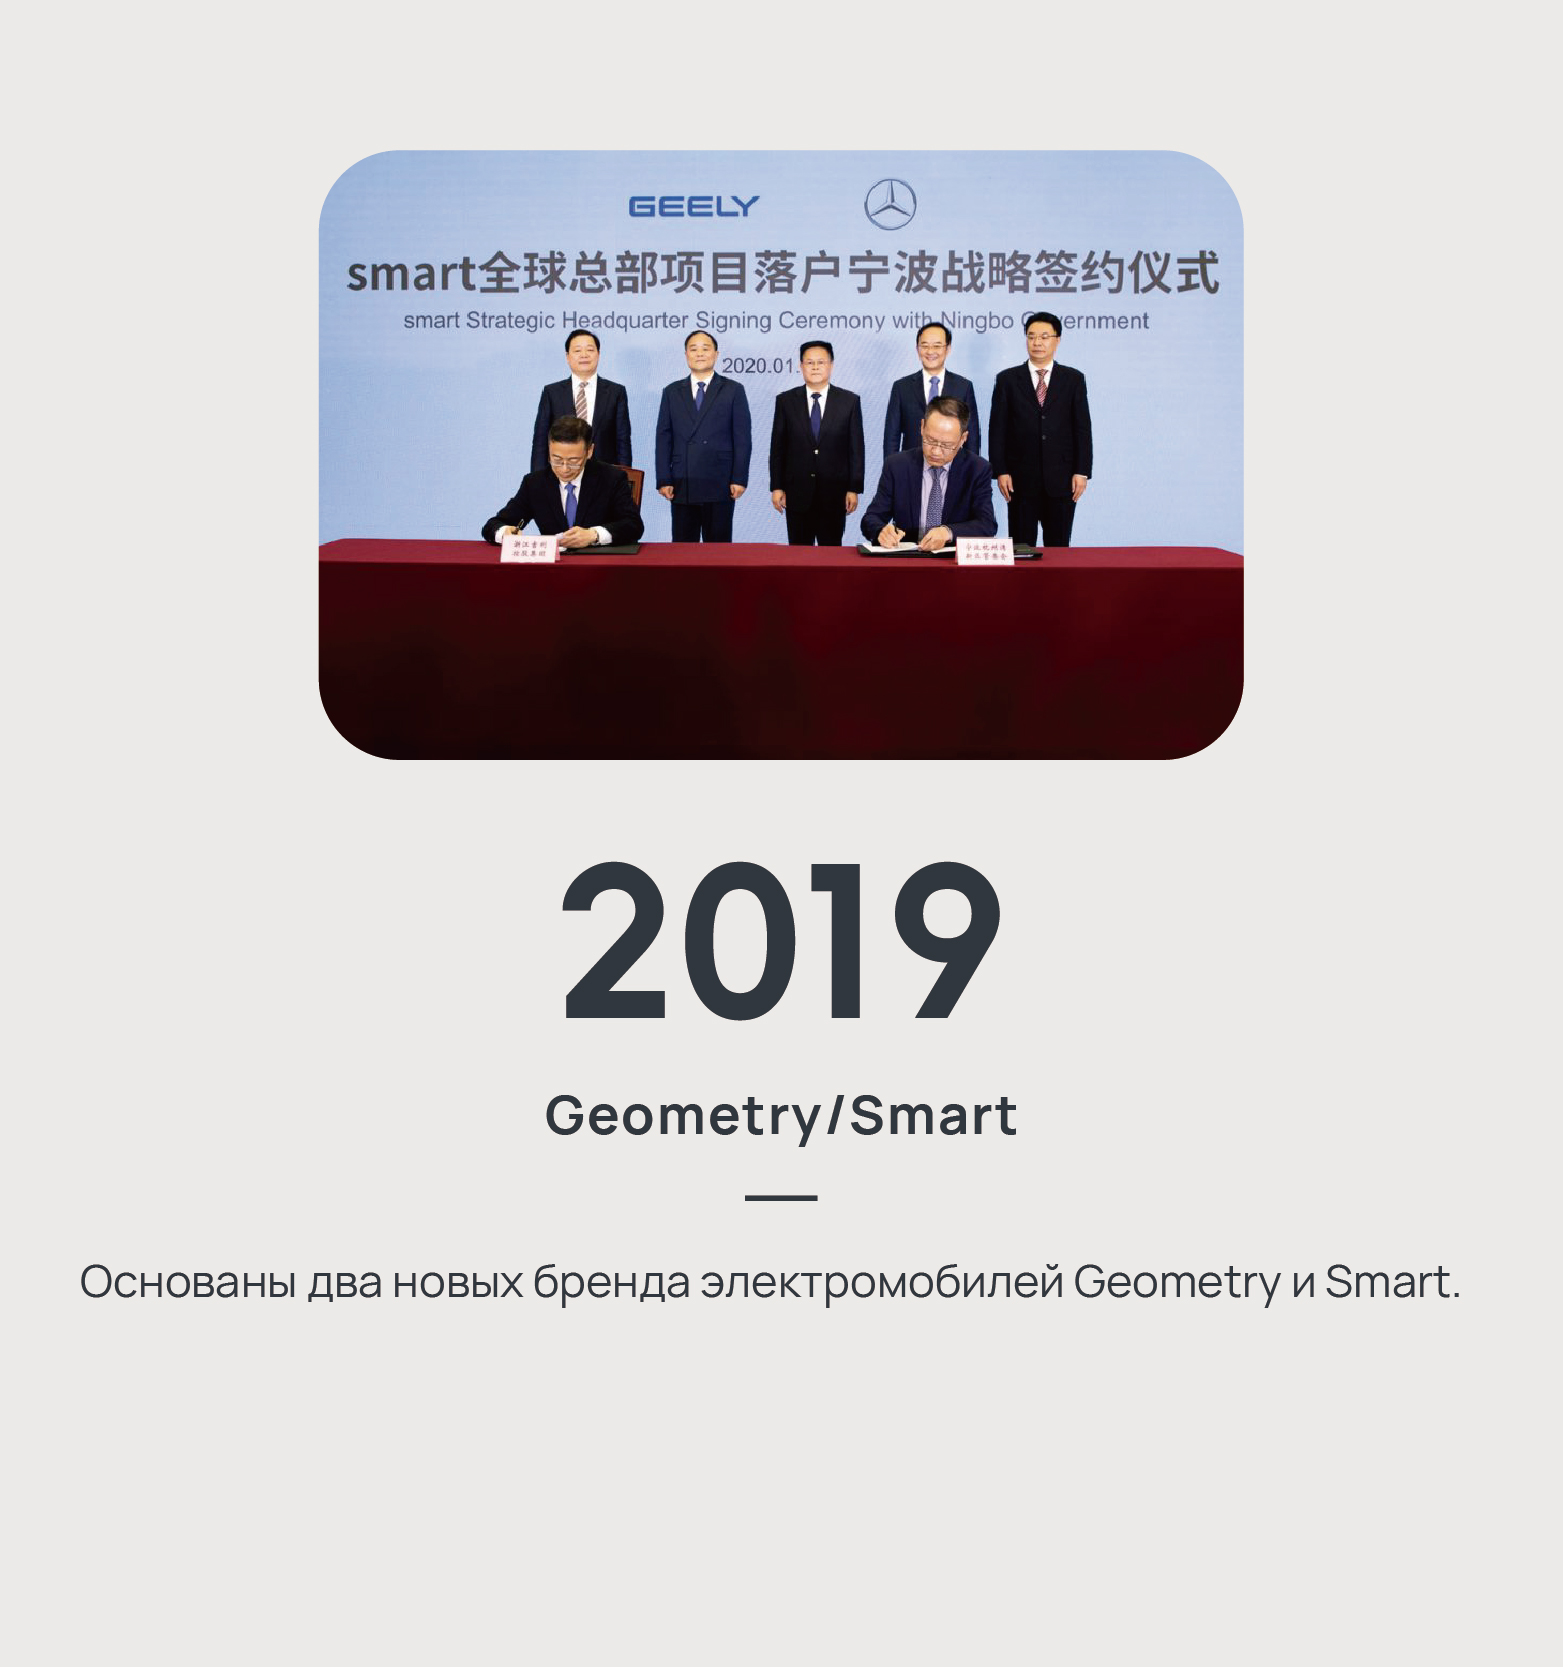 2019 - Geometry/Smart